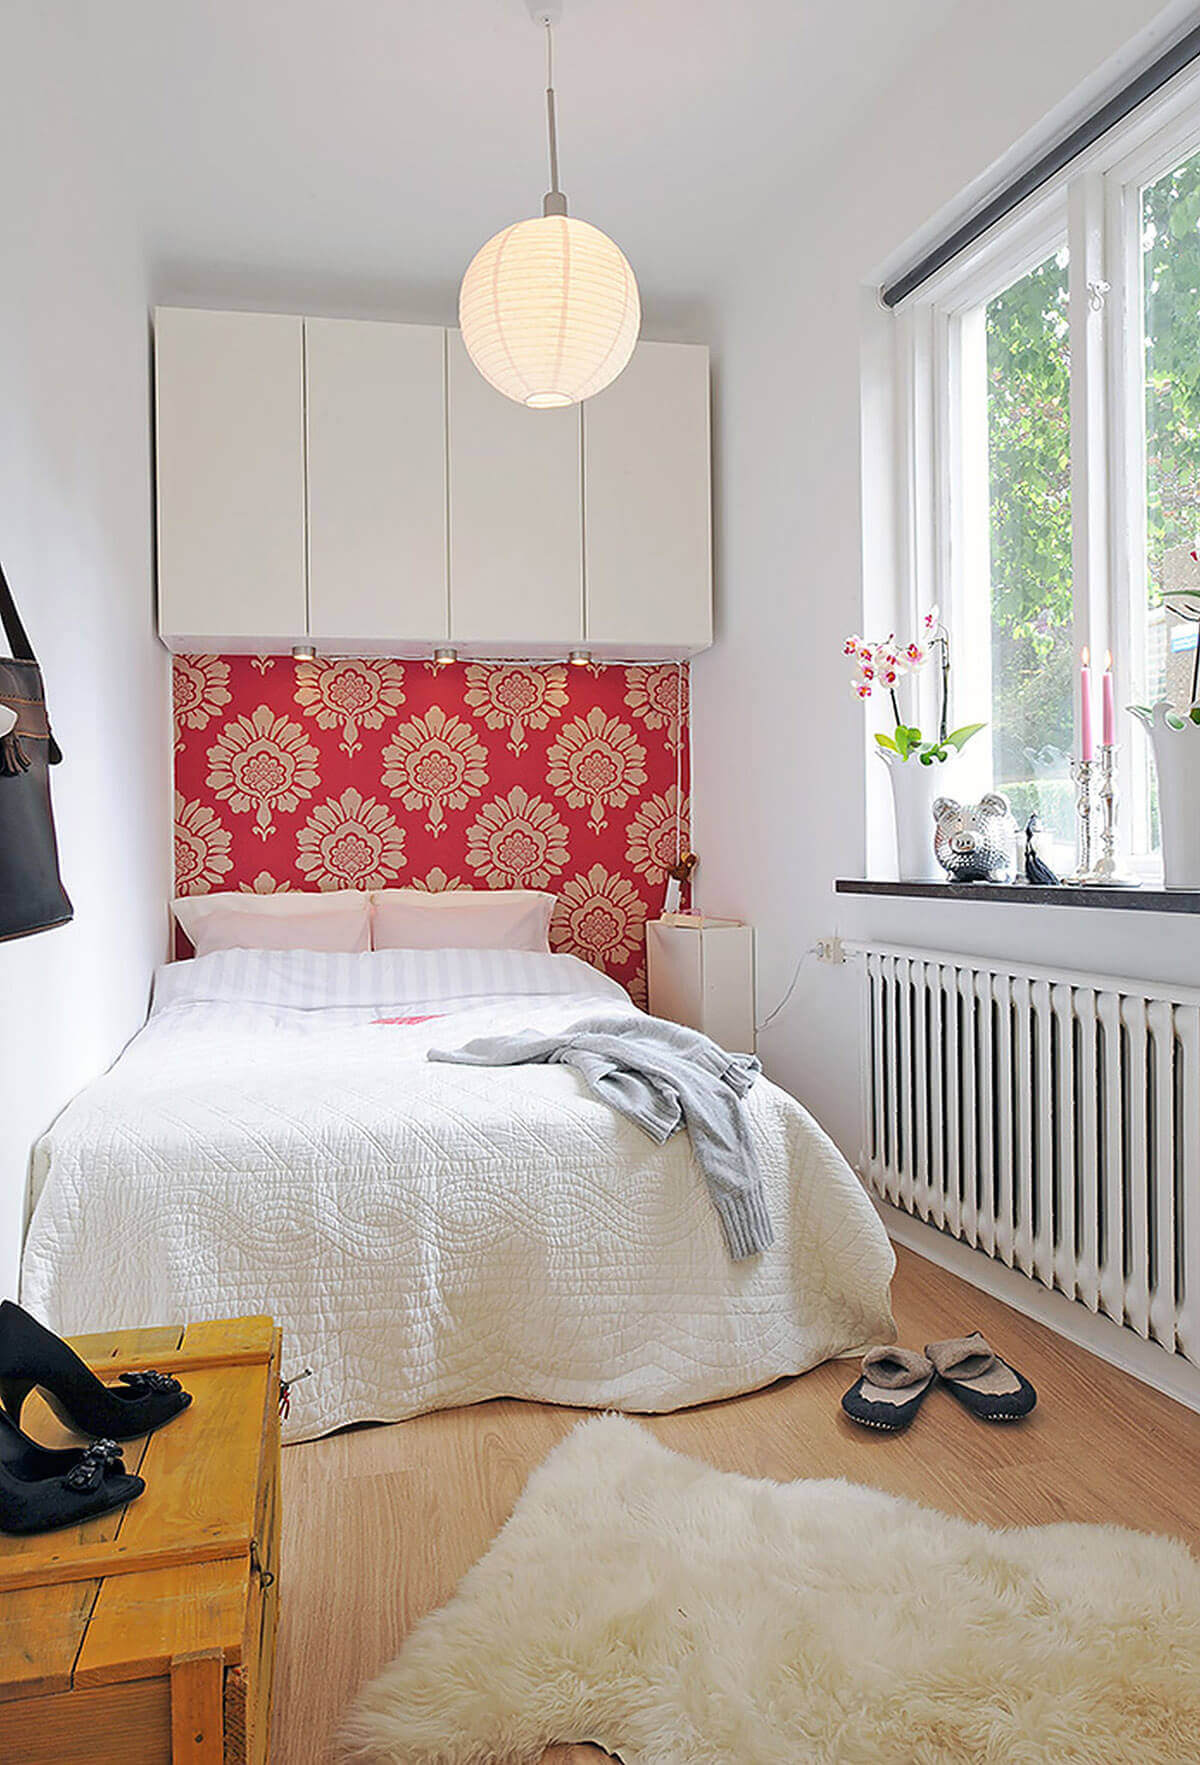 12 ý tưởng thiết kế phòng ngủ nhỏ 4m2 rộng và đẹp nhất